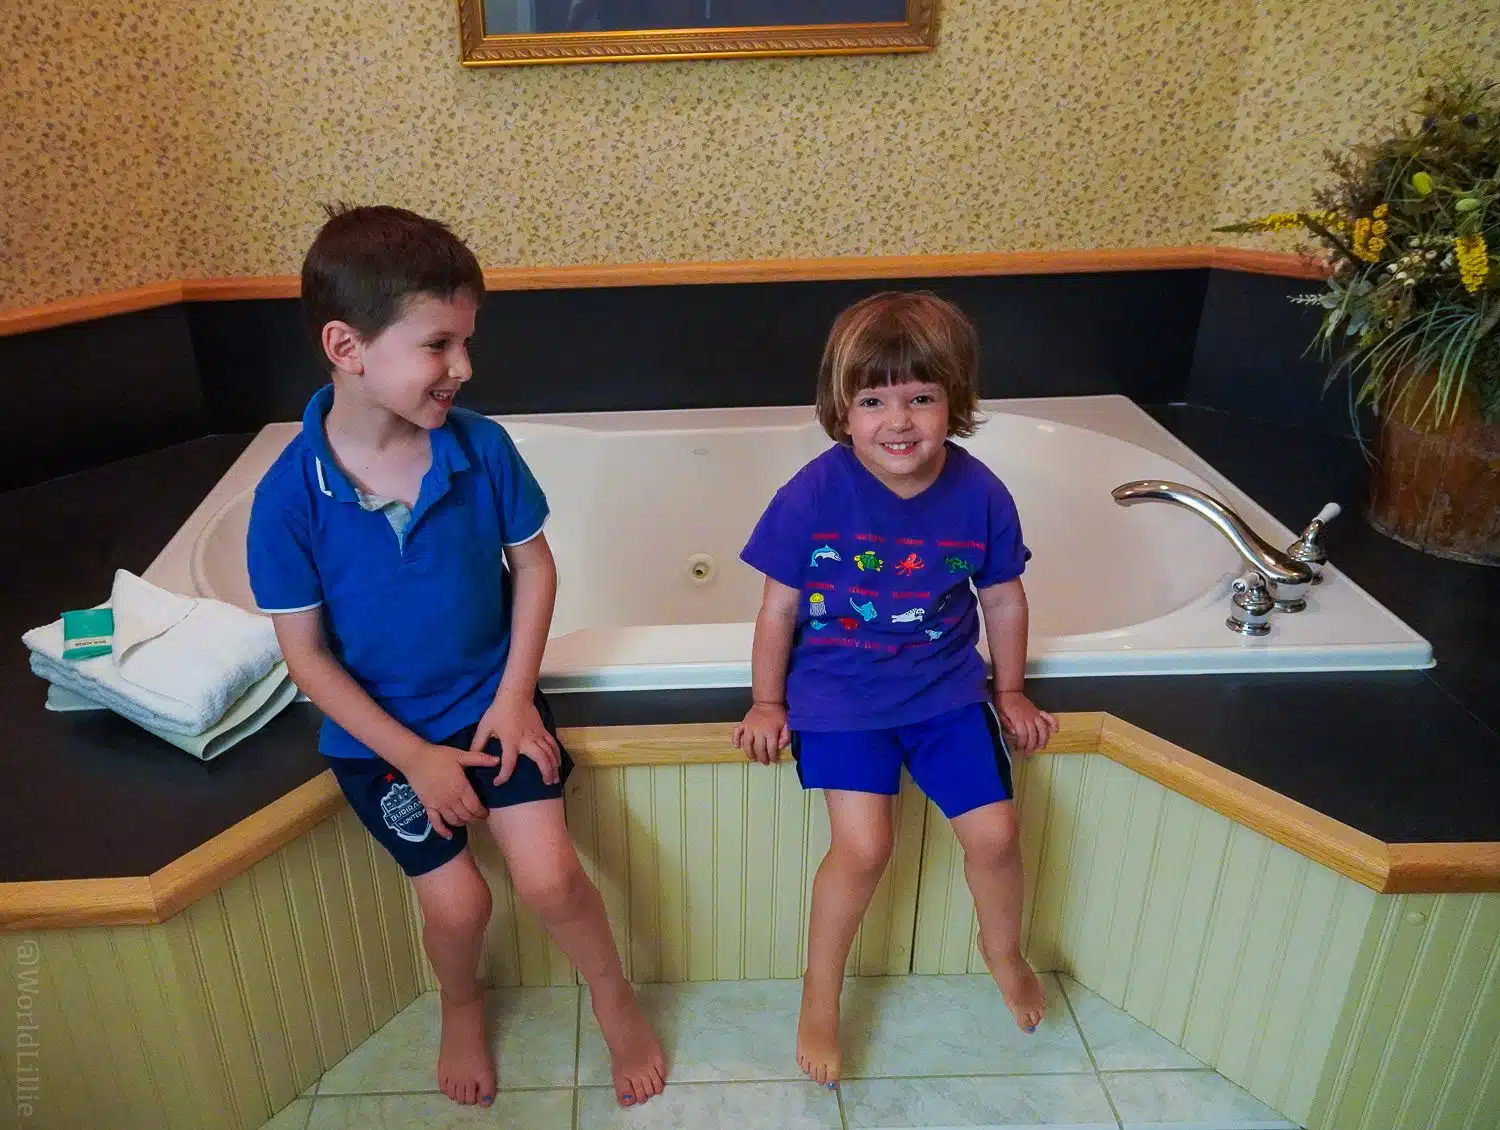 The kids enjoyed the jacuzzi tub.